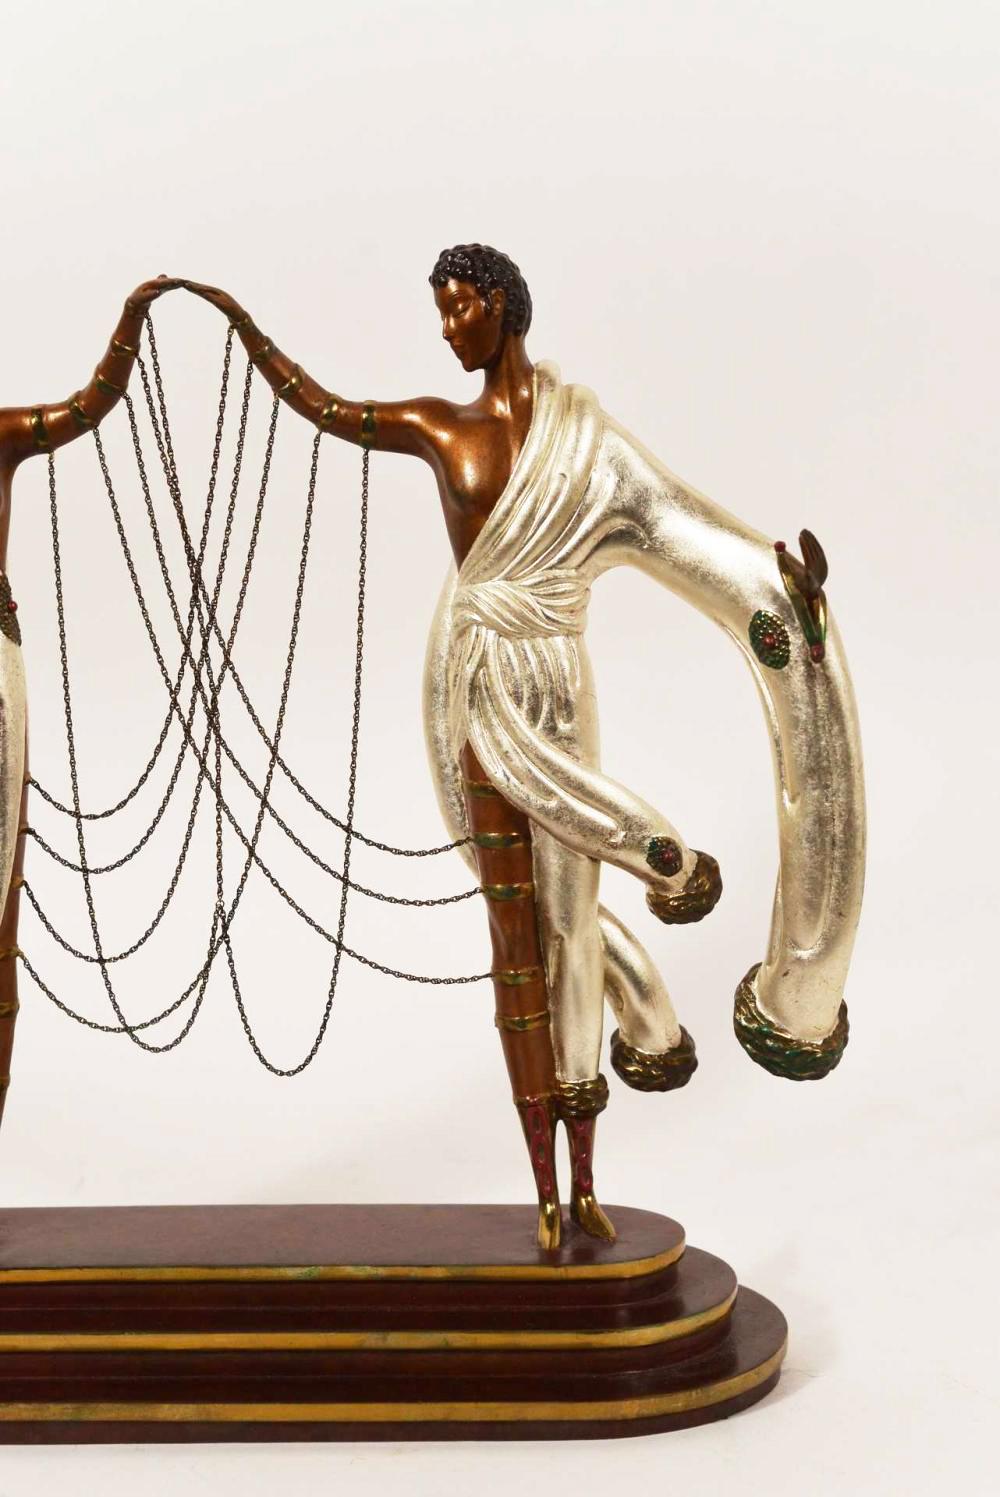 ERTE (ROMAIN DE TIRTOFF) „THE WEDDING“ BRONZE SculPTURE – Sculpture von Erte - Romain de Tirtoff